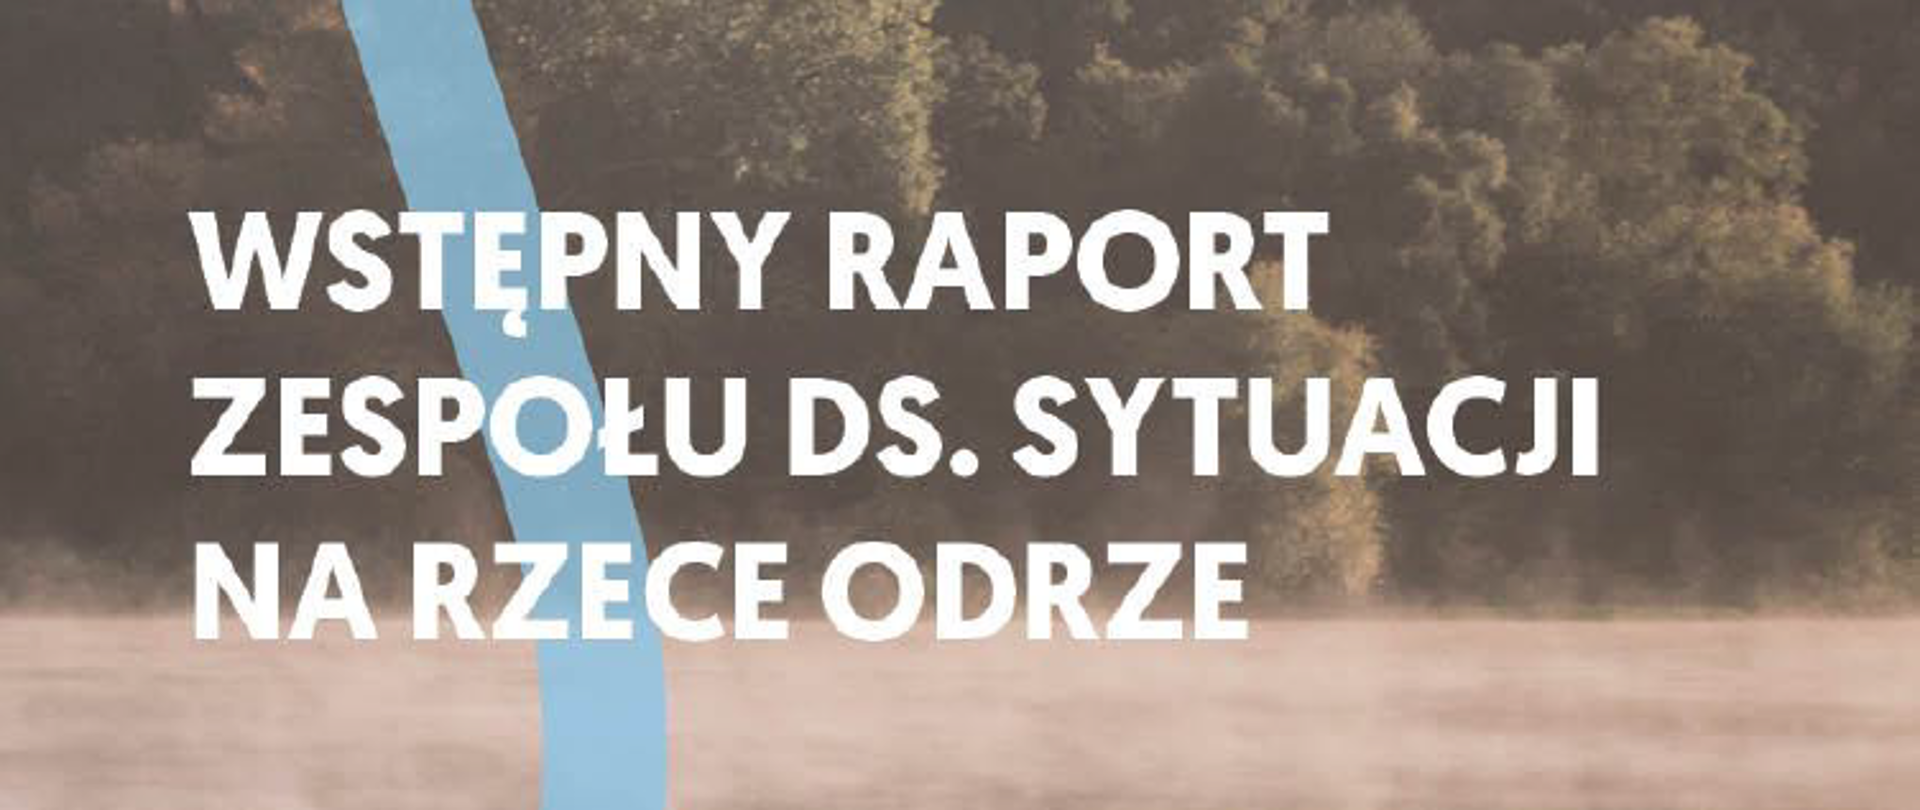 Raport Zespołu do spraw sytuacji powstałej na rzece Odrze. 